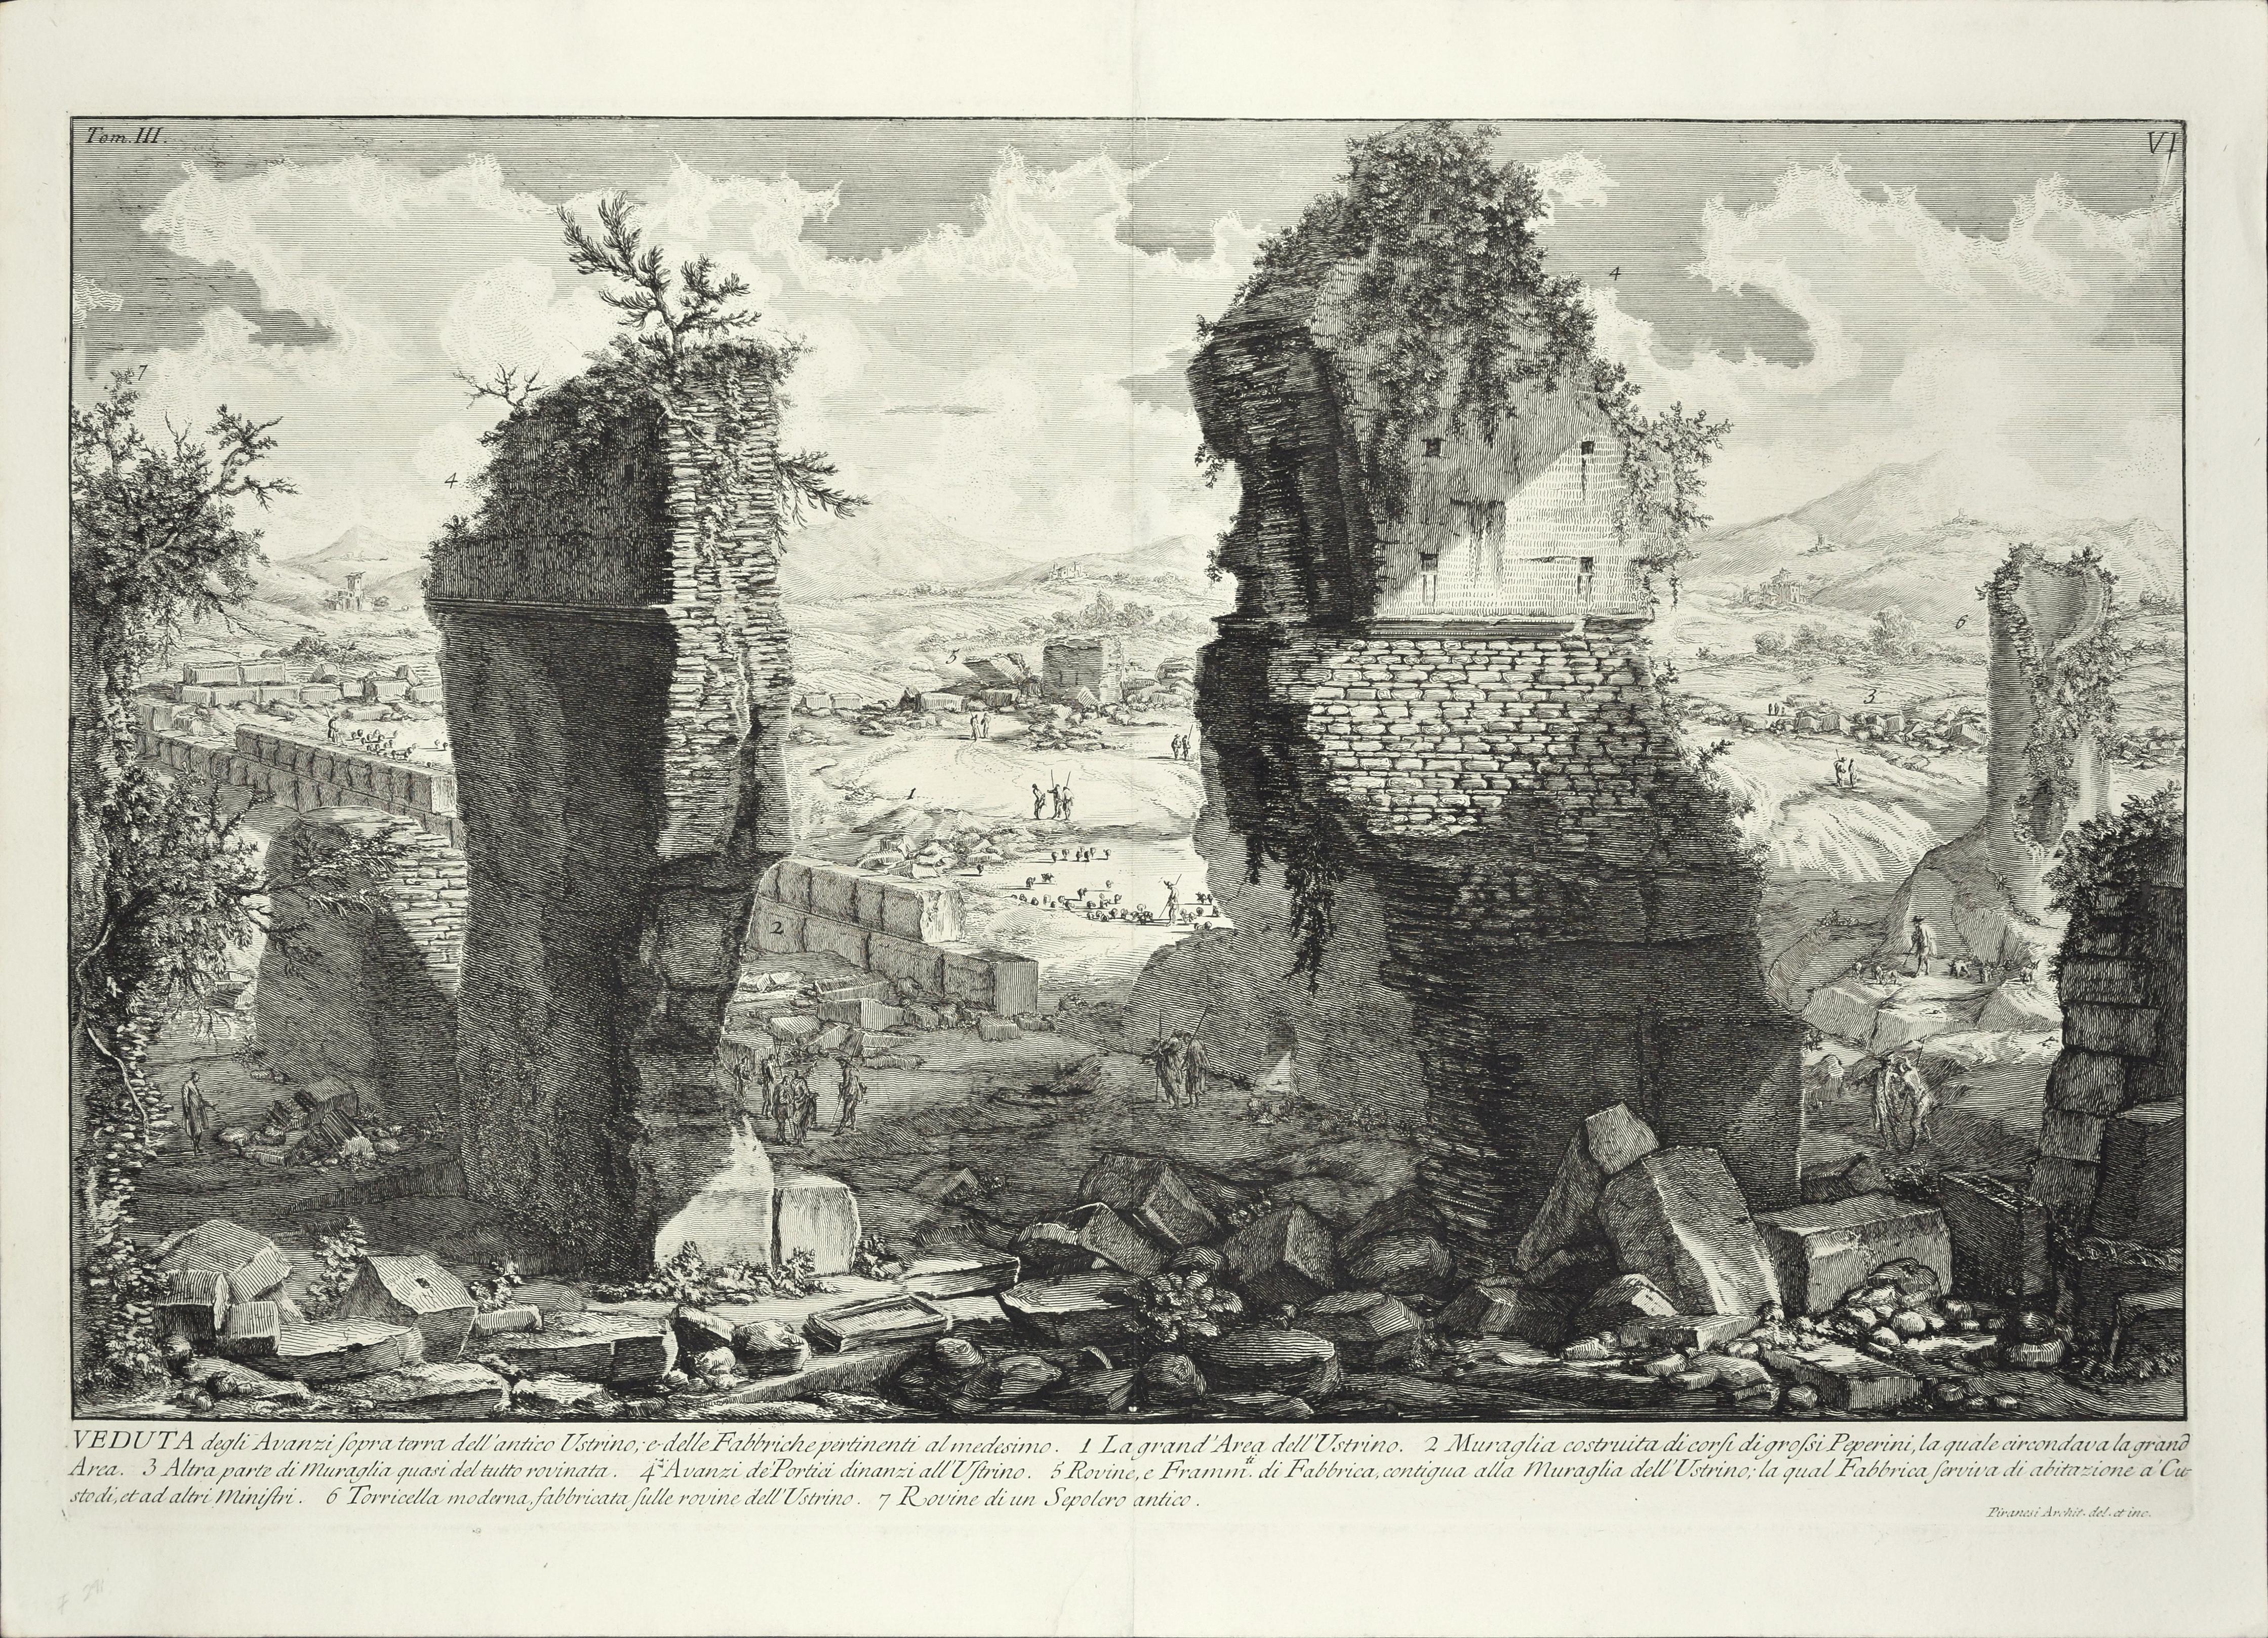 Veduta degli Avanzi sopra terra dell'antico Ustrino - Etching by G. B. Piranesi